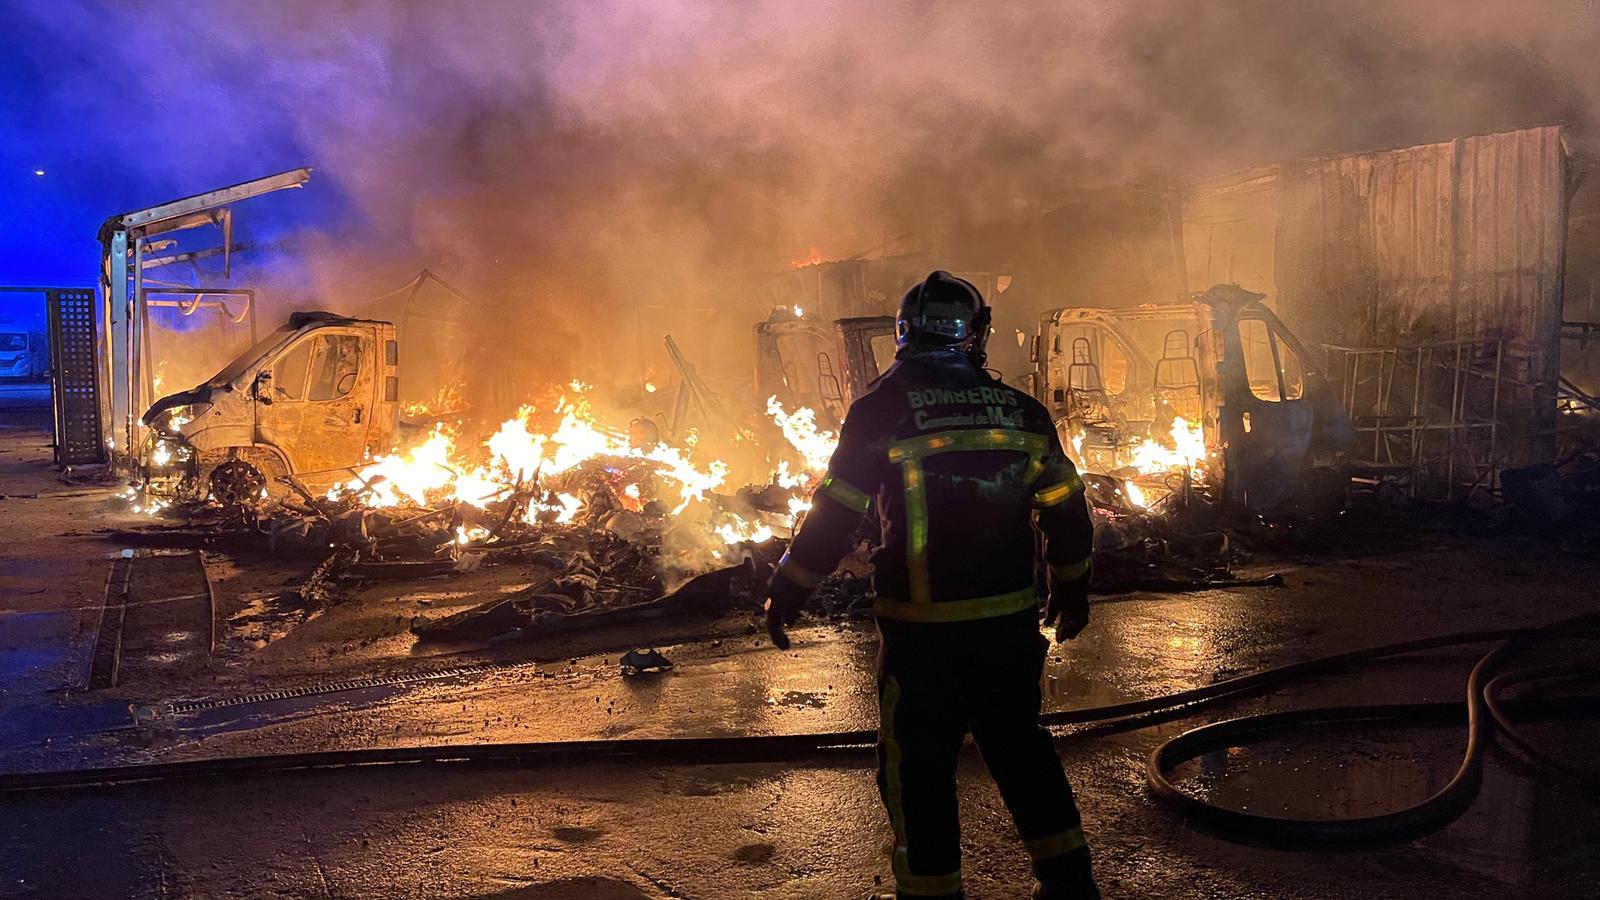 Febrero 2021 (02-01-21) Controlado el incendio que ha arrasado 10 caravanas en un parking de Alcalá de Henares